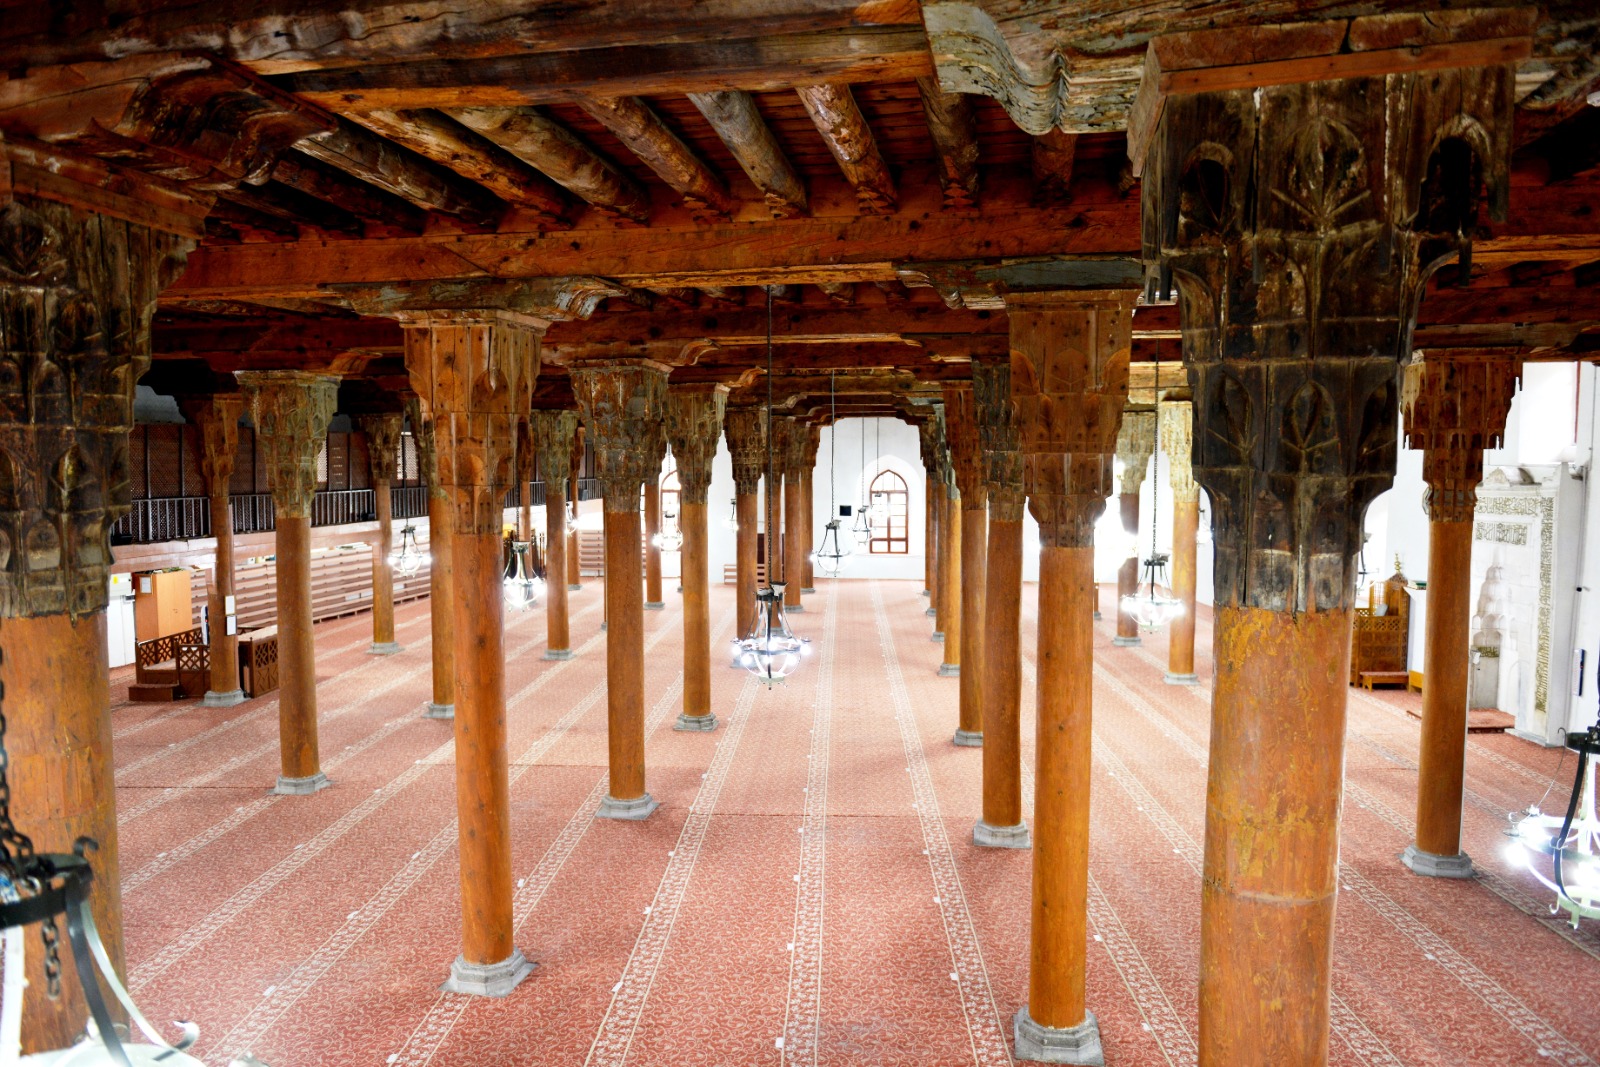 Anadolu’nun ahşap destekli camileri UNESCO Dünya Mirası Listesi’nde